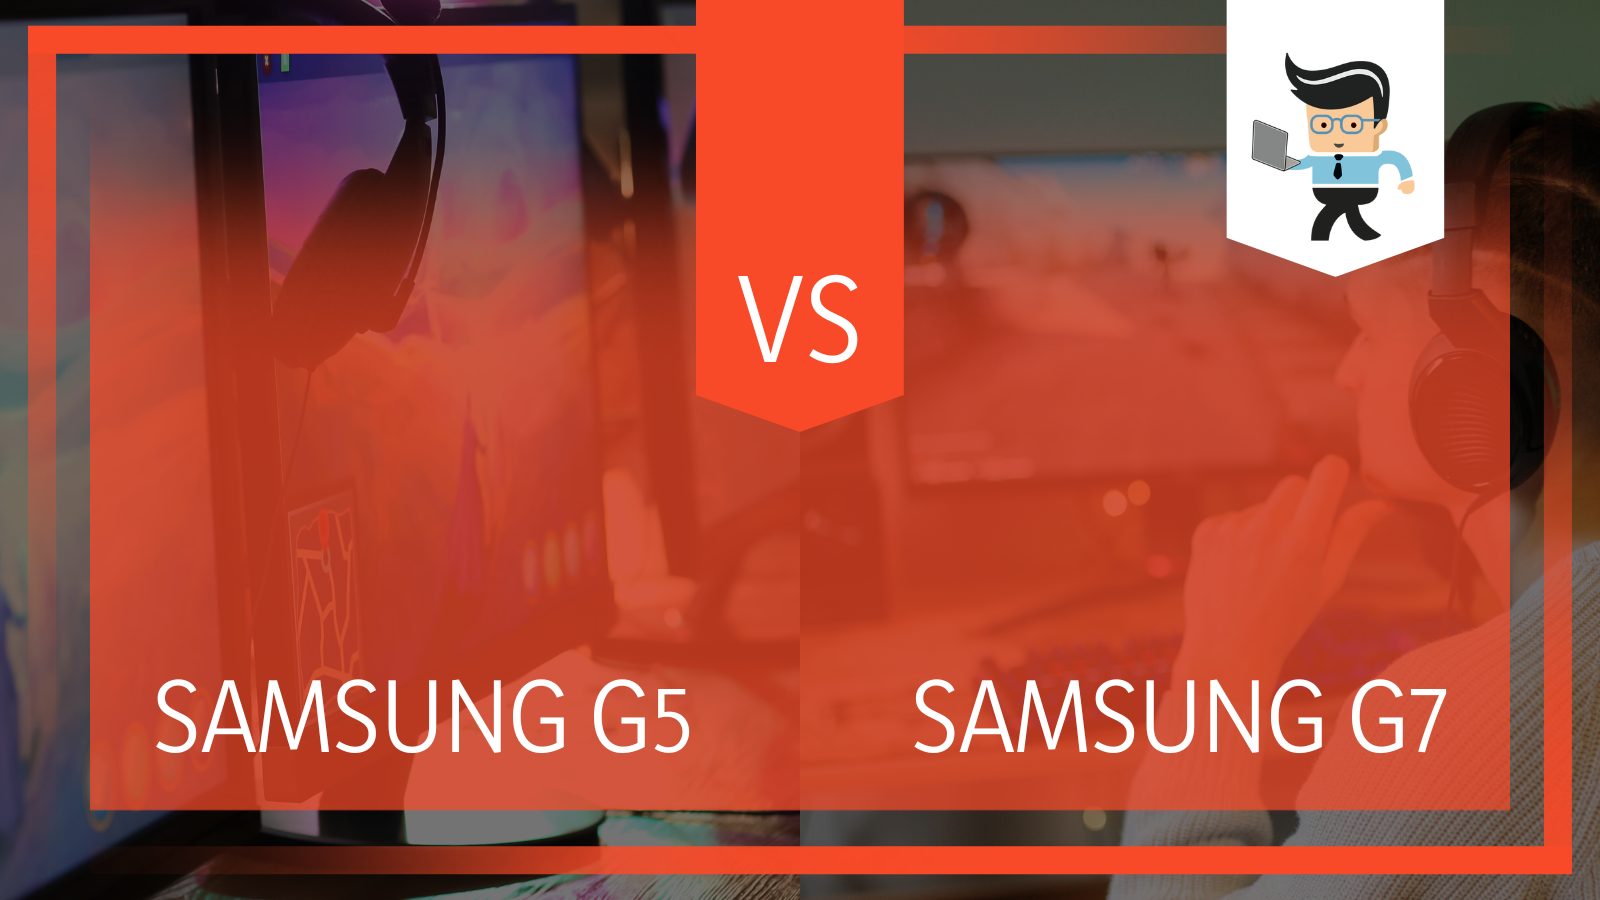 Samsung G5 vs G7 Gaming Monitor